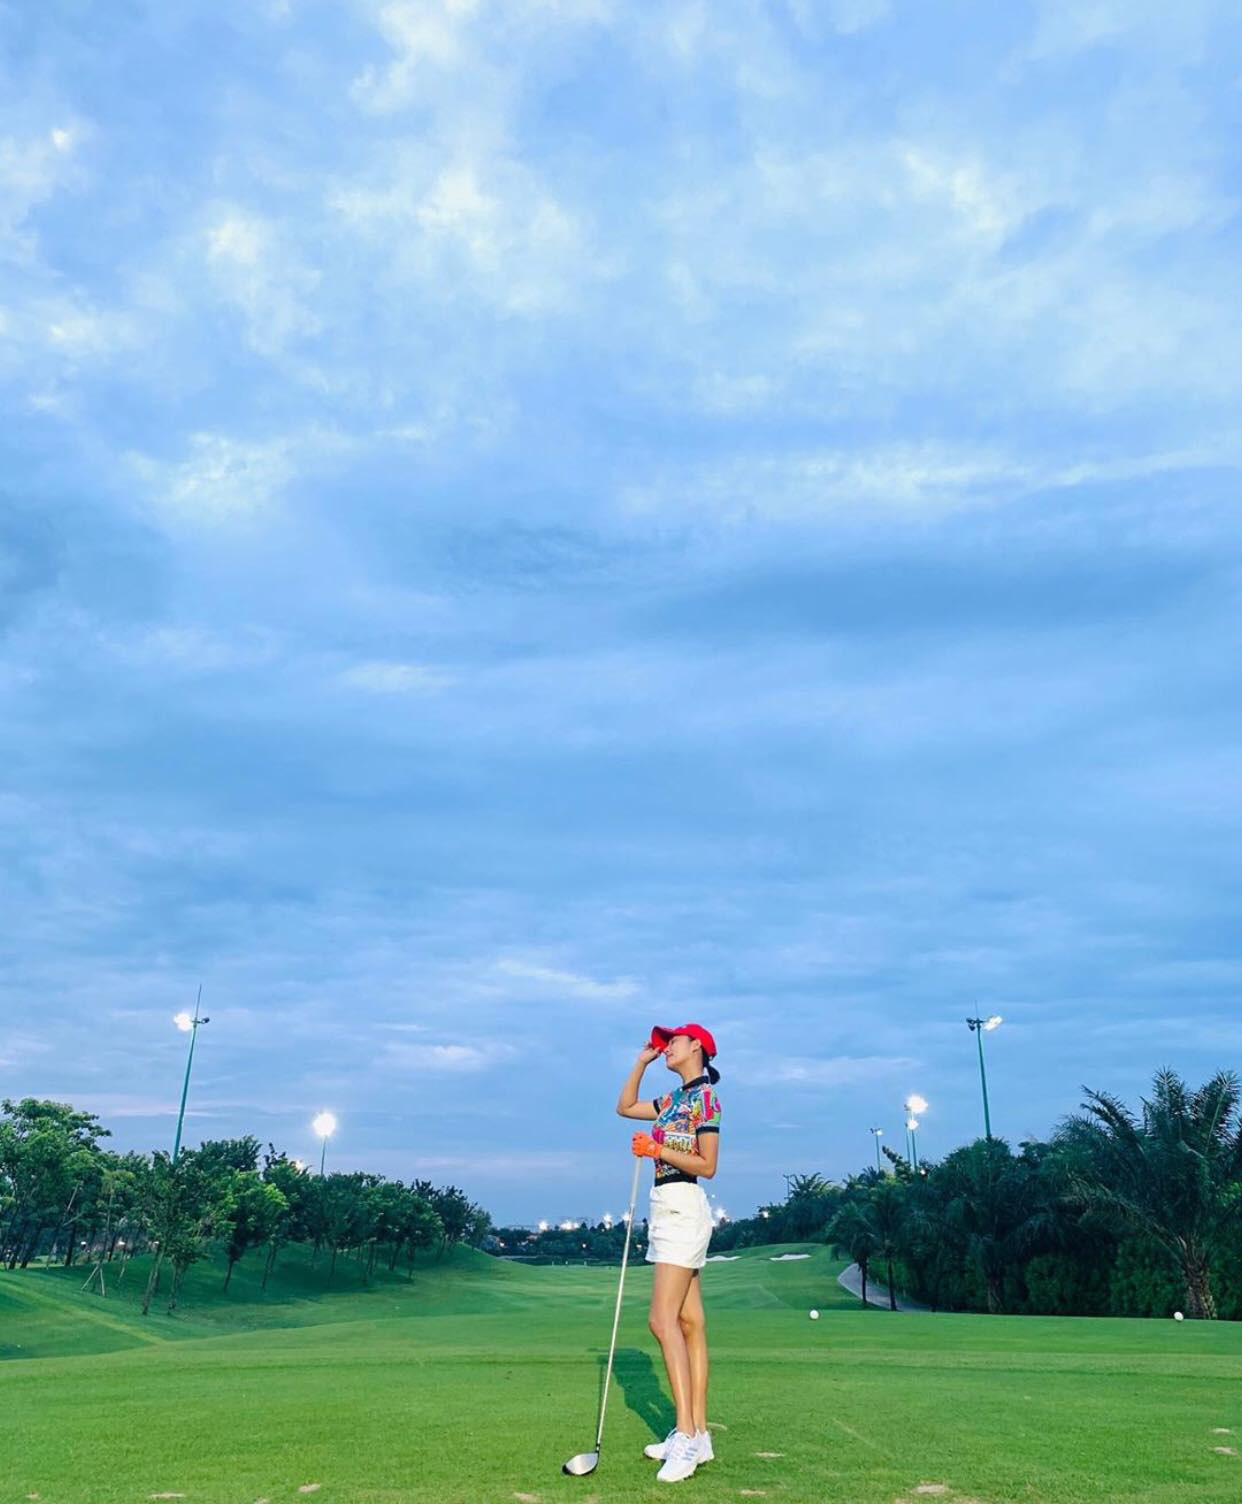 Sân golf hóa đấu trường đọ body trá hình của mỹ nhân Vbiz: Hương Giang cực nuột bên Matt Liu, Hoa hậu, Á hậu so kè quá căng - Ảnh 11.